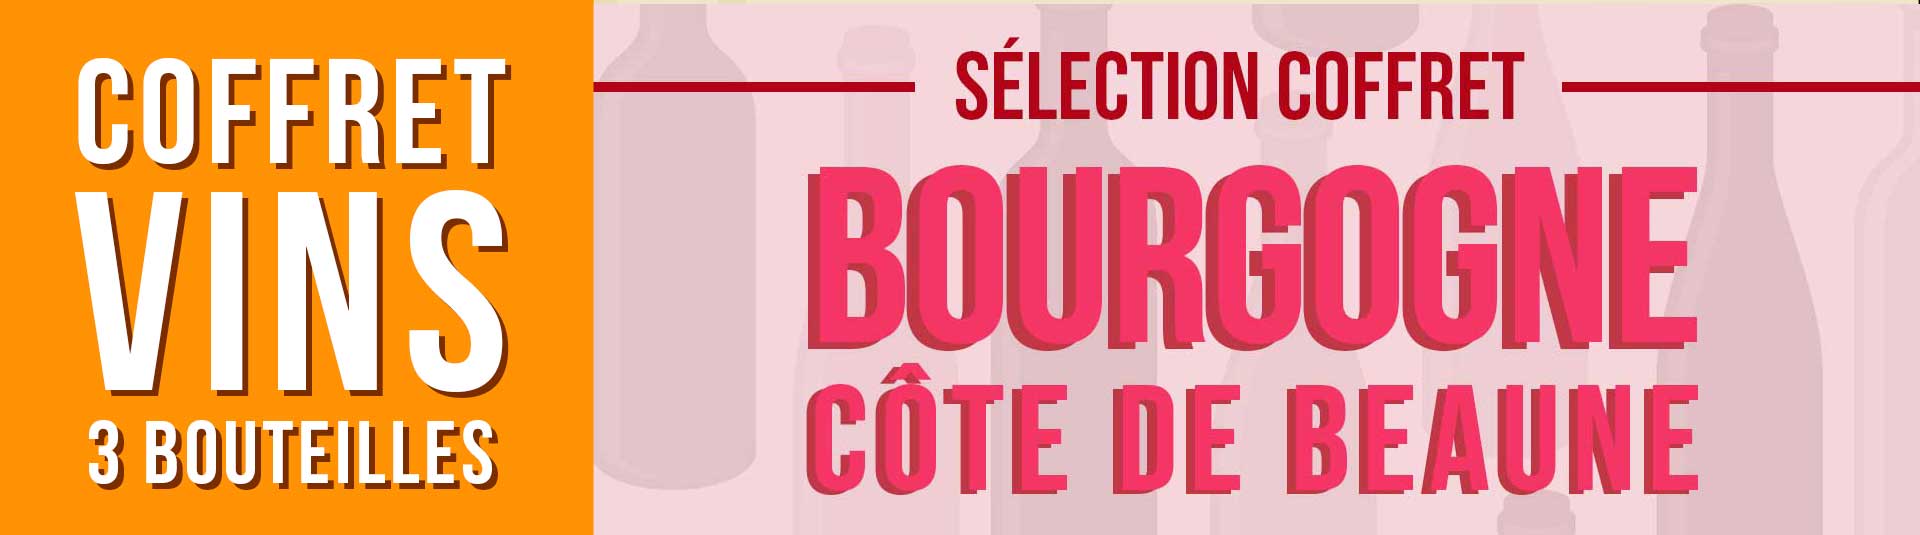 Coffret vin Bourgogne Côte de Beaune Sélection 3 bouteilles